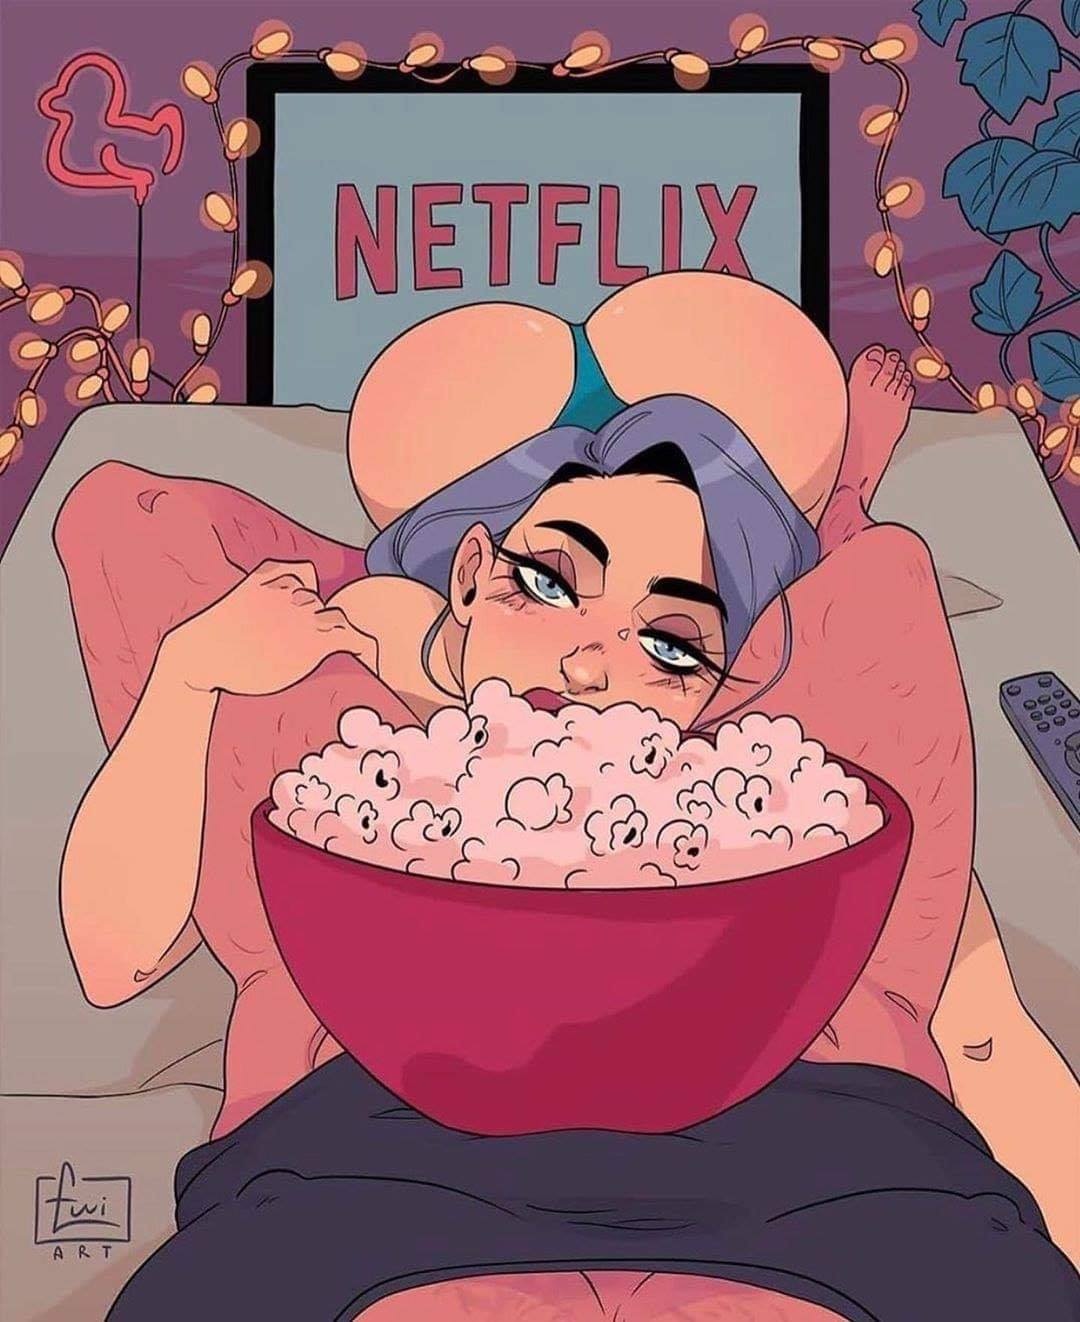 cartoon - Art Netflix 0009 000 000